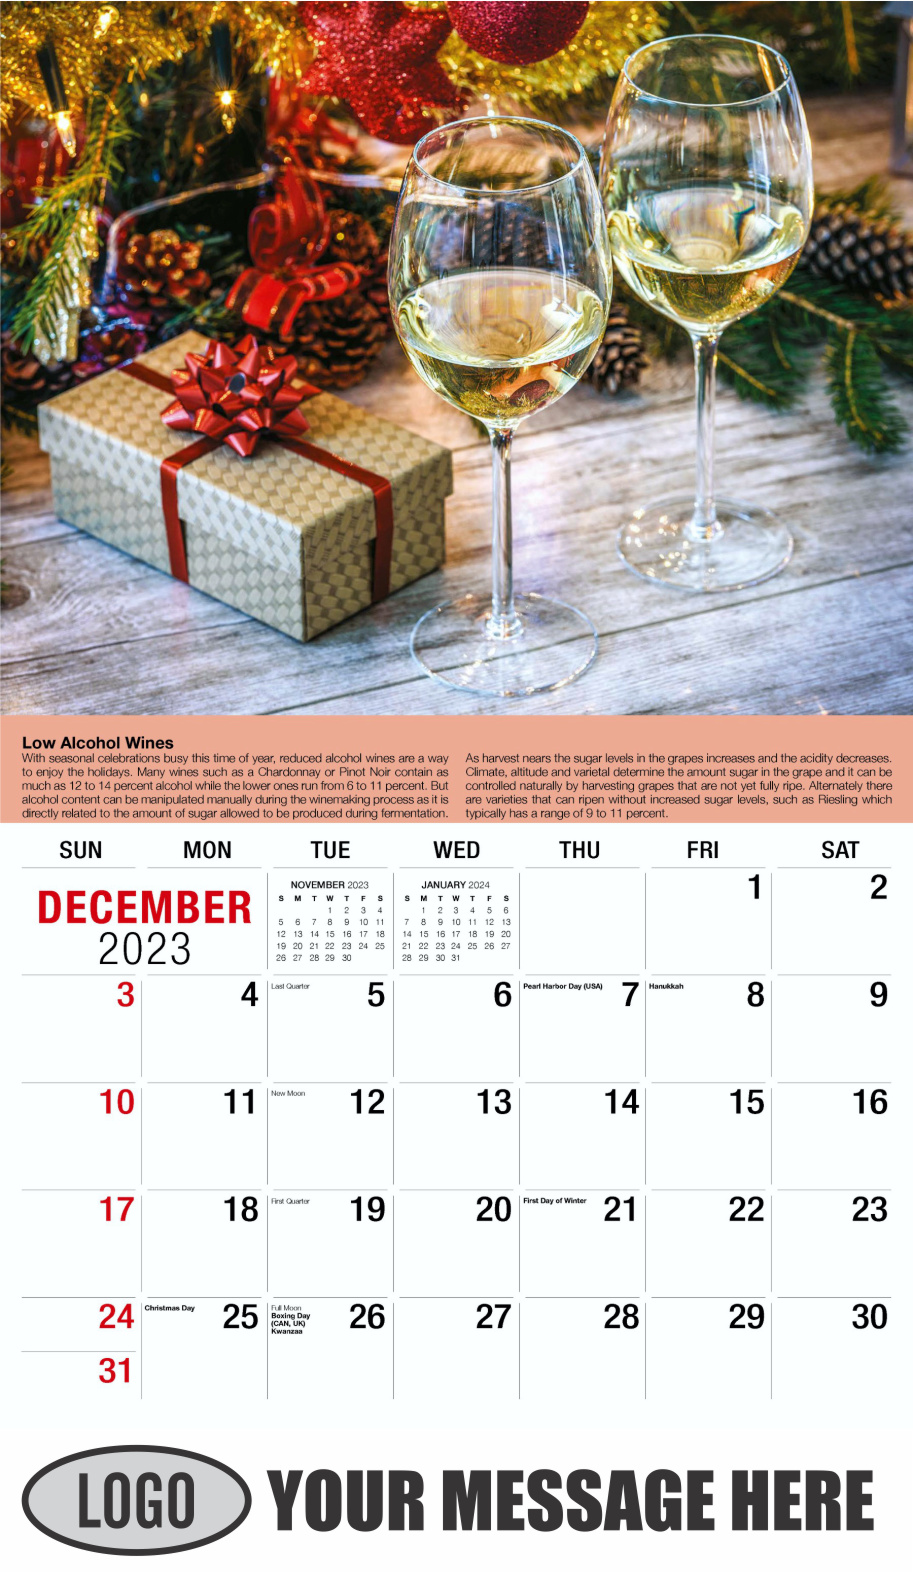 Vintages - Wine Tips 2024 Business Promo Calendar - December_a